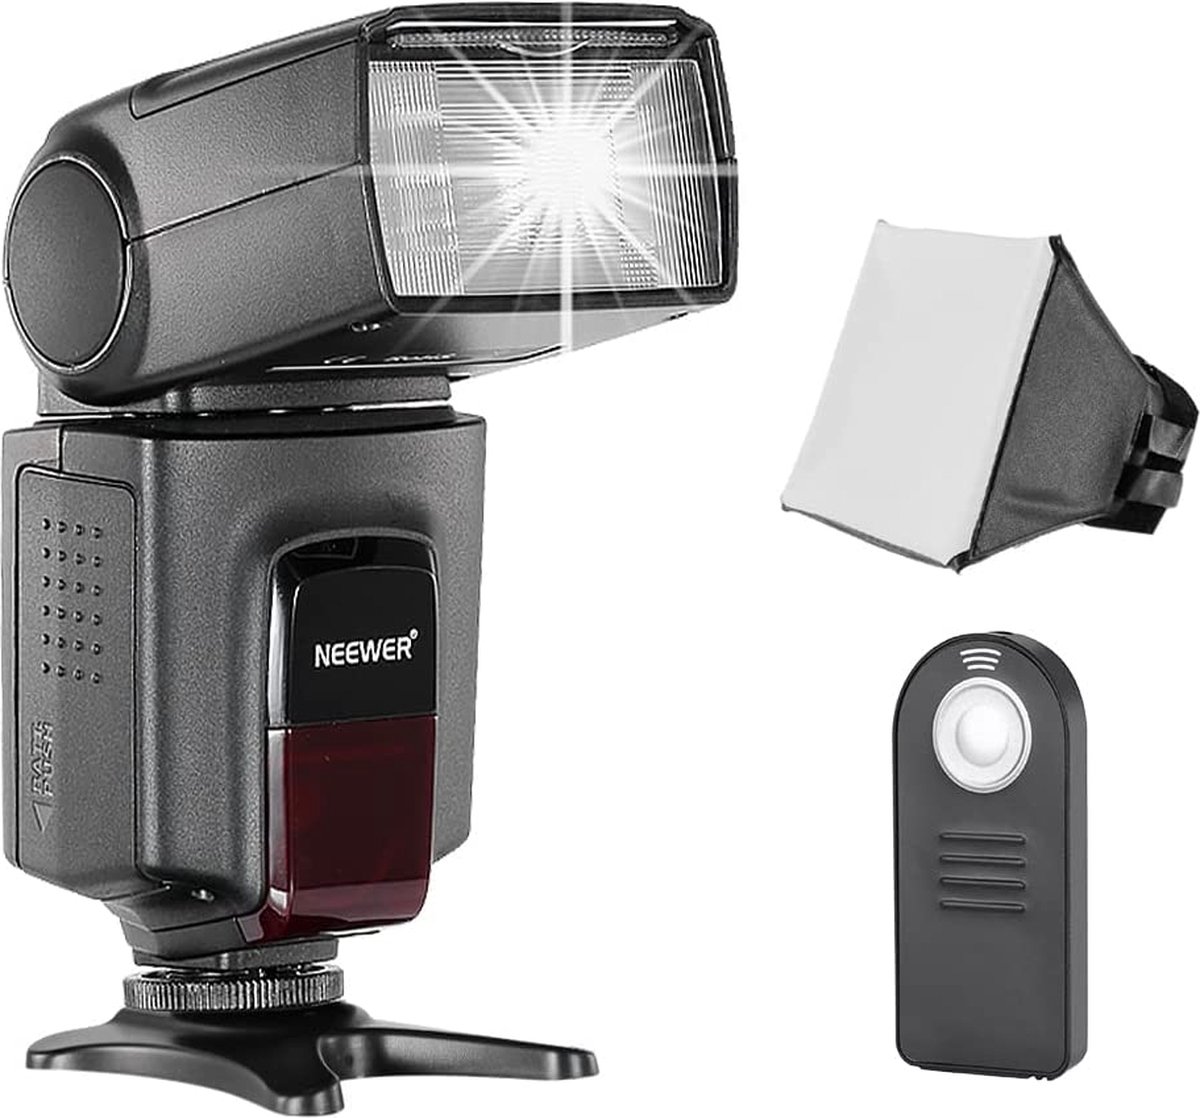 Neewer® - TT560 Flitser Speedlite Flitsset Geschikt voor Canon Nikon Sony Pentax DSLR camera met Standaard Flitsschoen - incl. 1 x TT560 Flitsapparaat - 1 x Soft Diffuser - 1 x Afstandsbediening - 4 x Batterijen